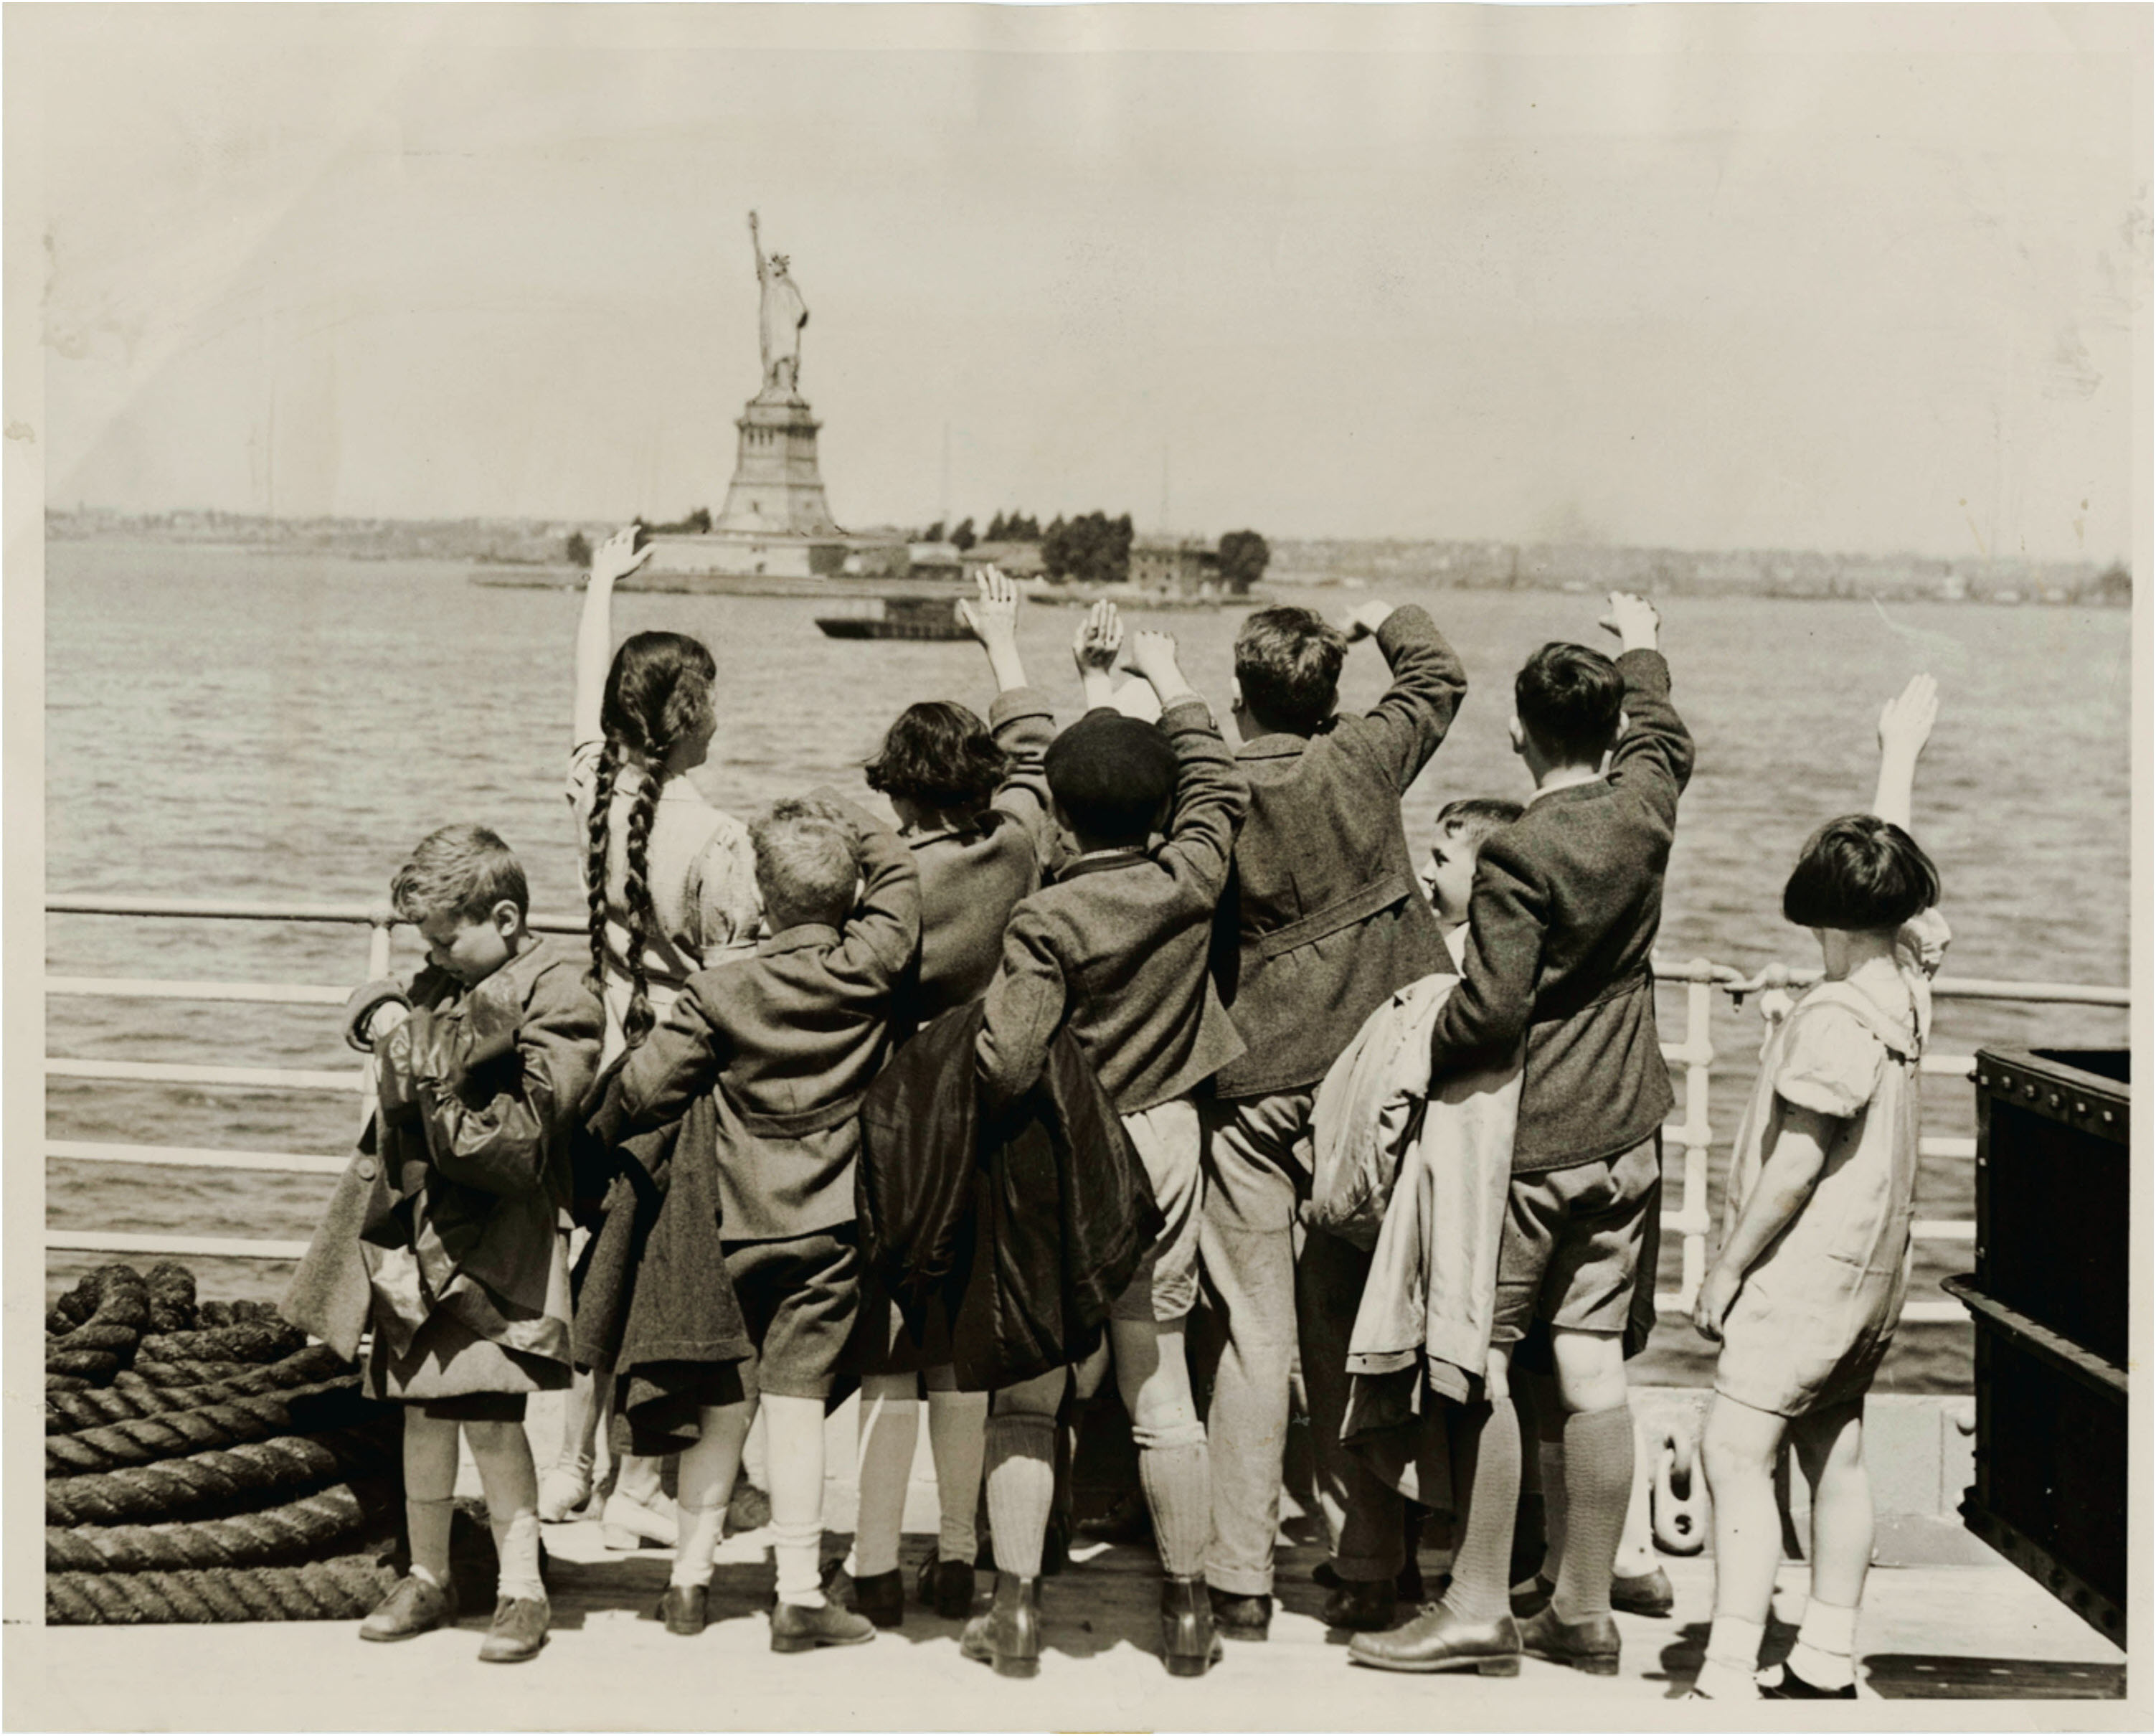 Children fleeing Nazis wave hello to Statute of Liberty, 1940s.jpg